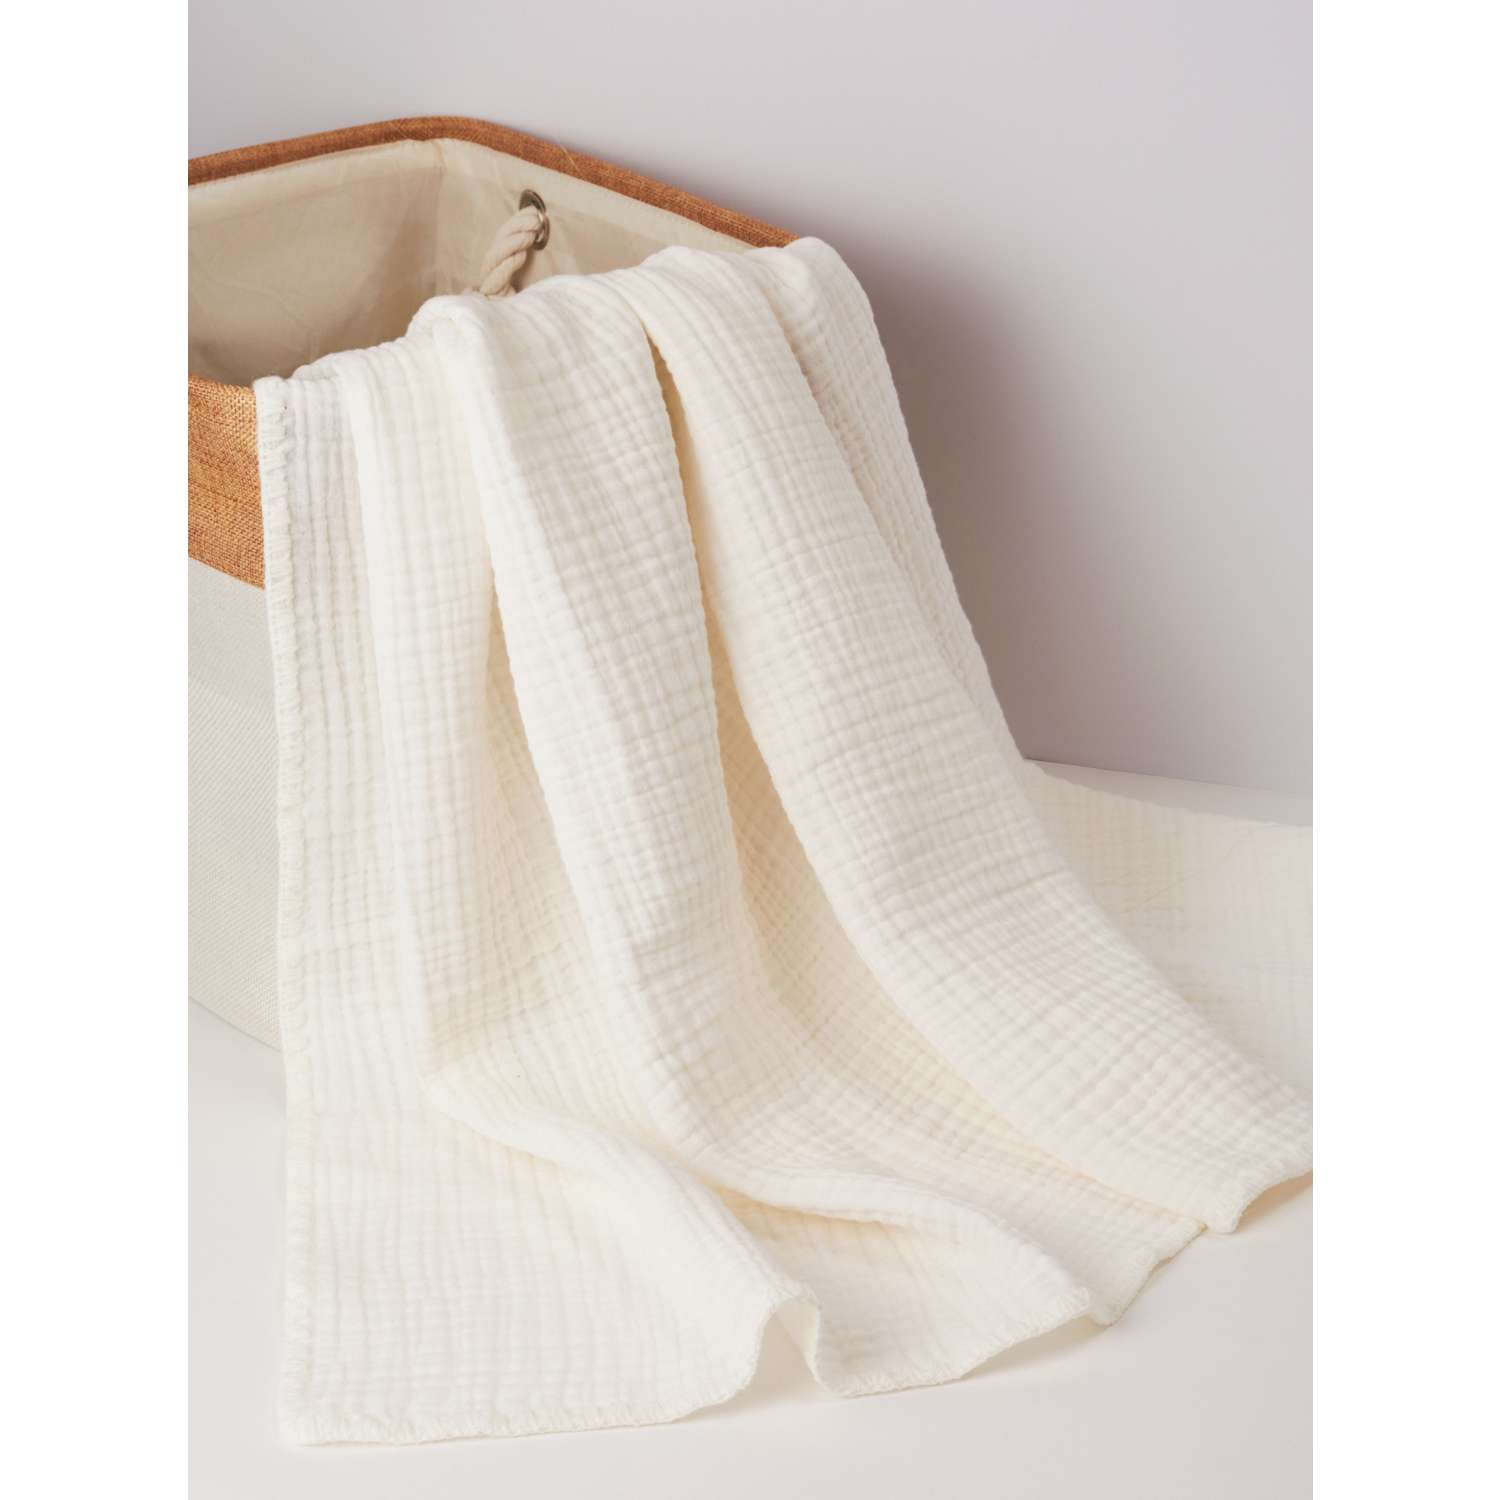 Муслиновое одеяло Bebekevi для новорожденного четырехслойное экрю - фото 1